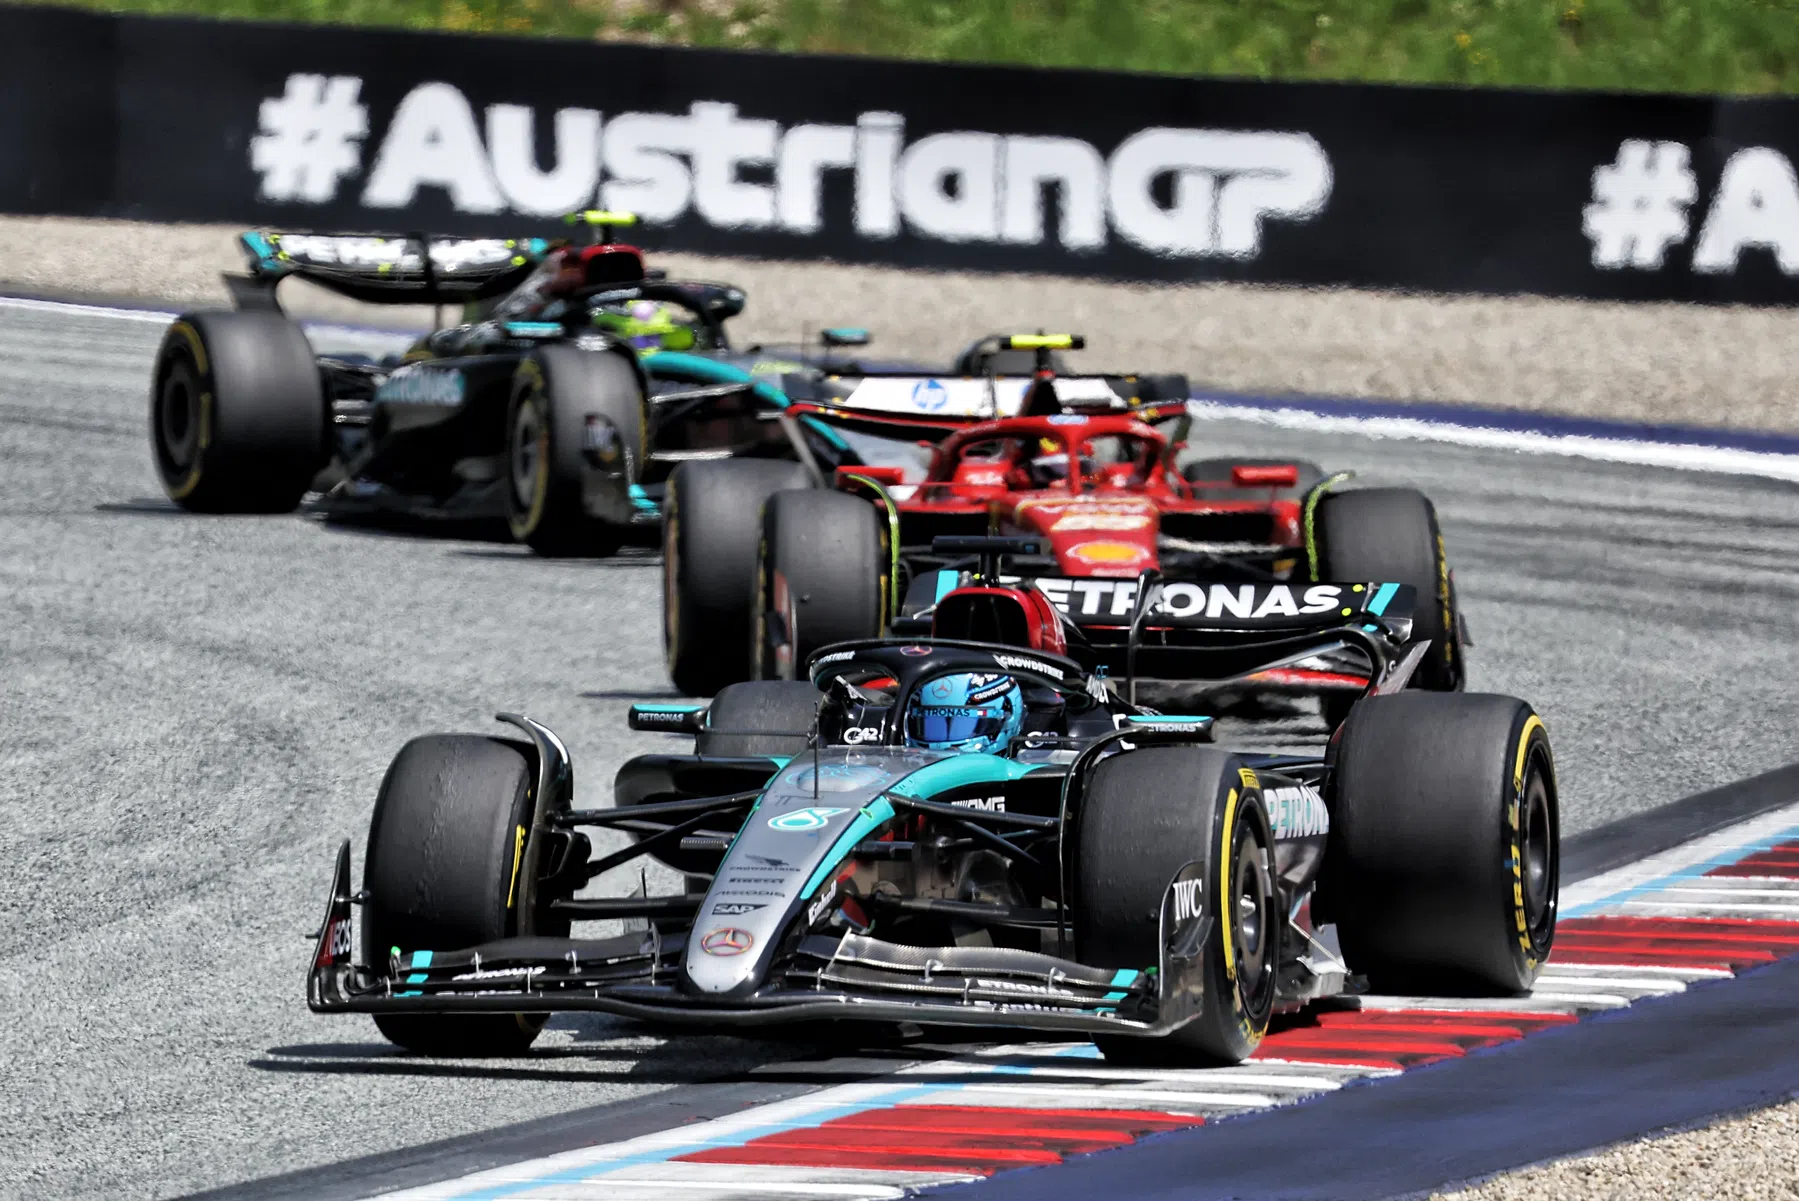 Mercedes opferte sich für das Qualifying in Österreich